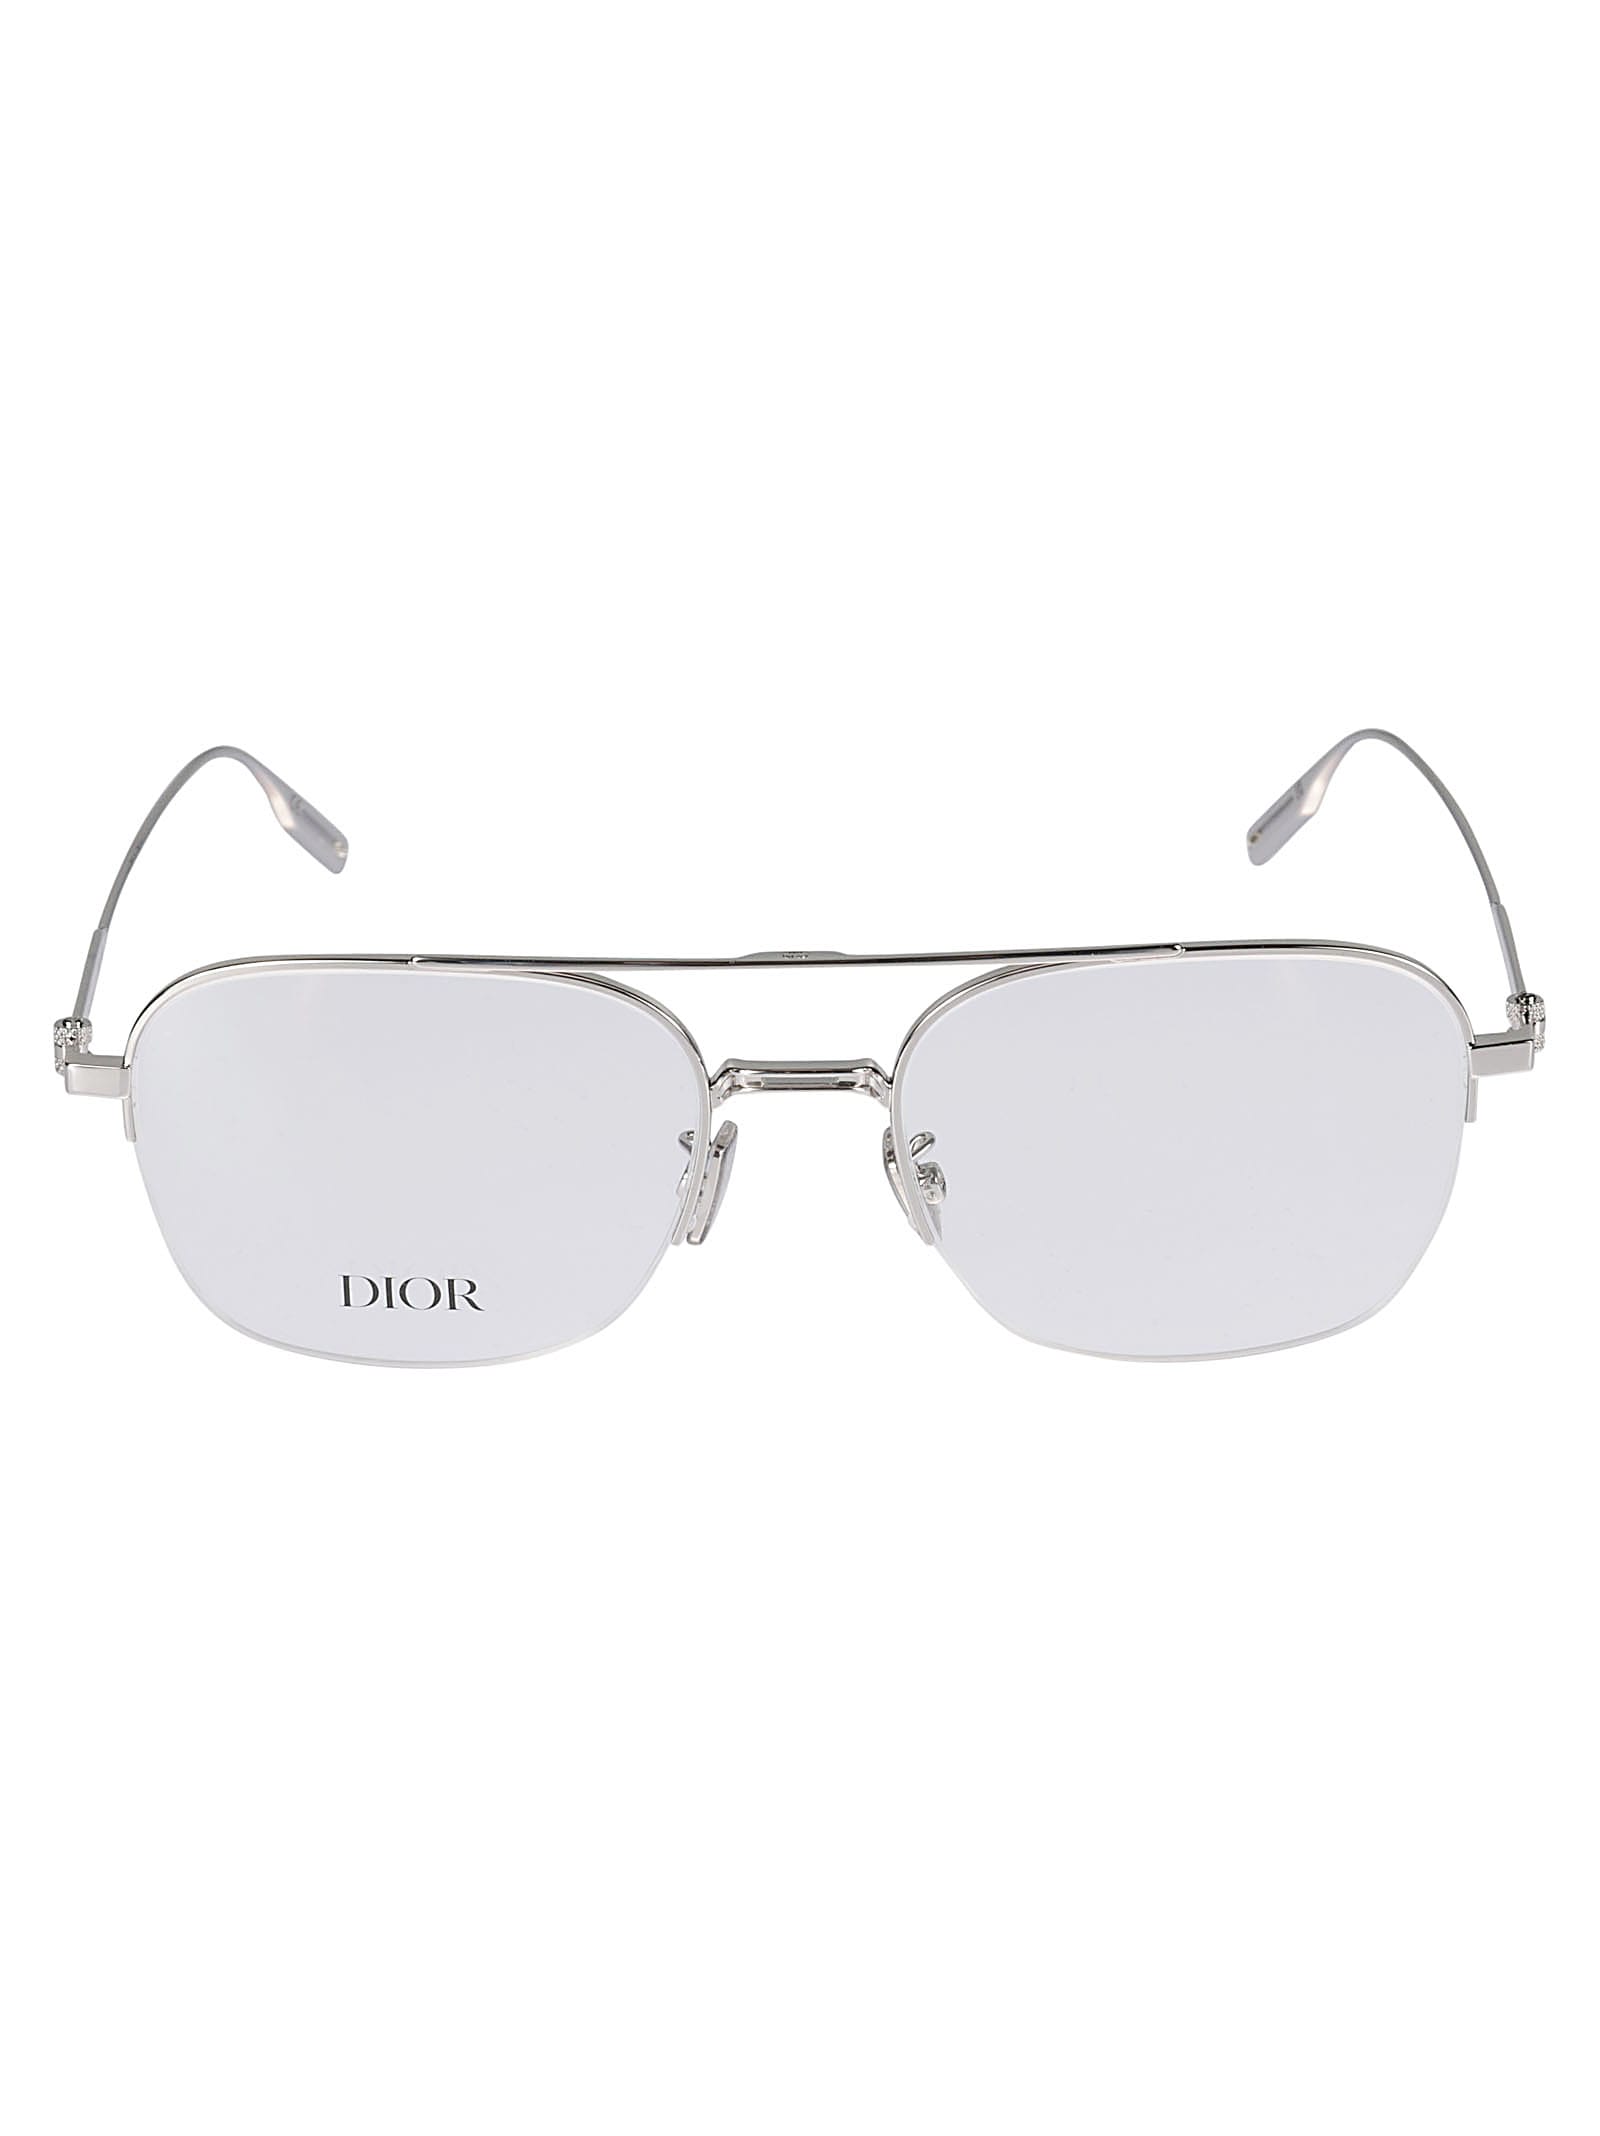 Neo Dior Glasses